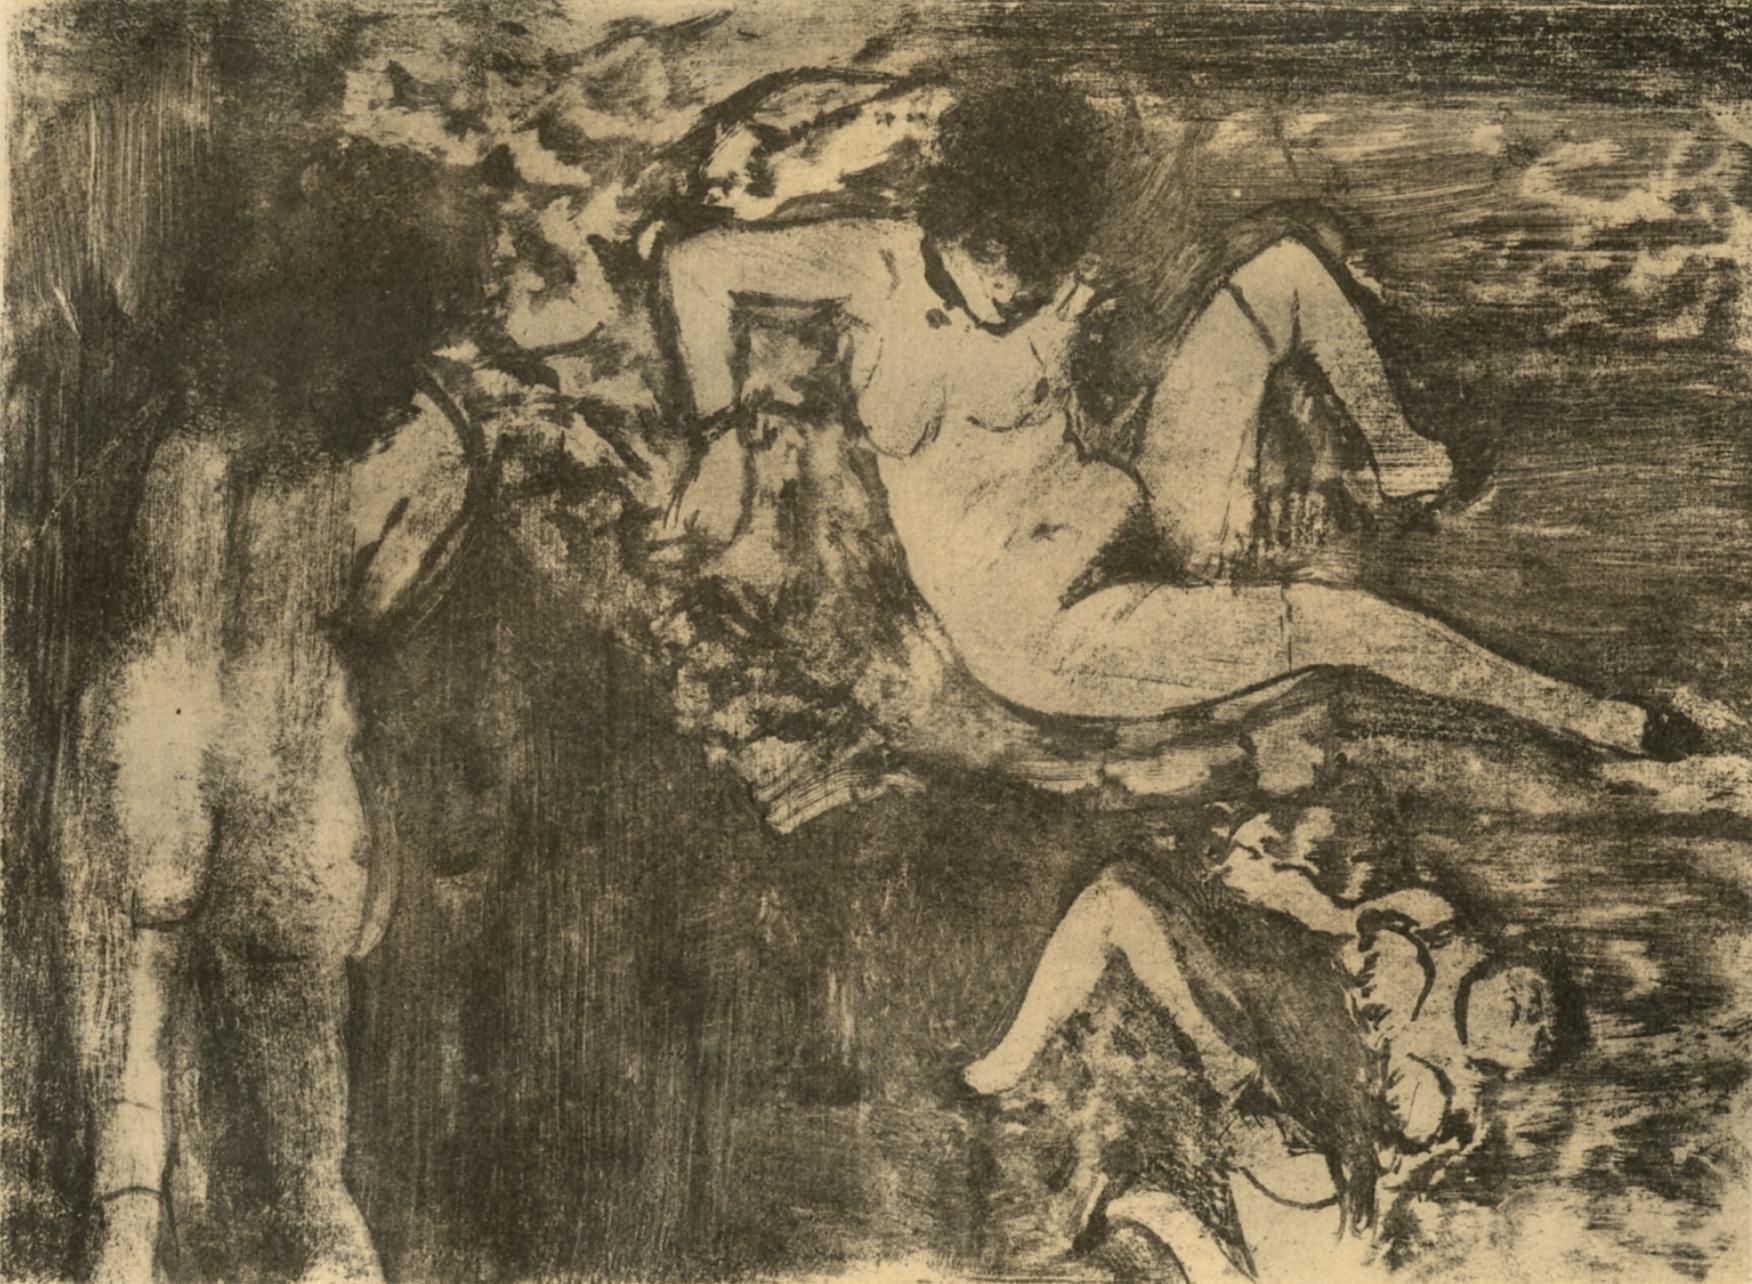 Degas, Les Femmes, Les Monotypes (nach)